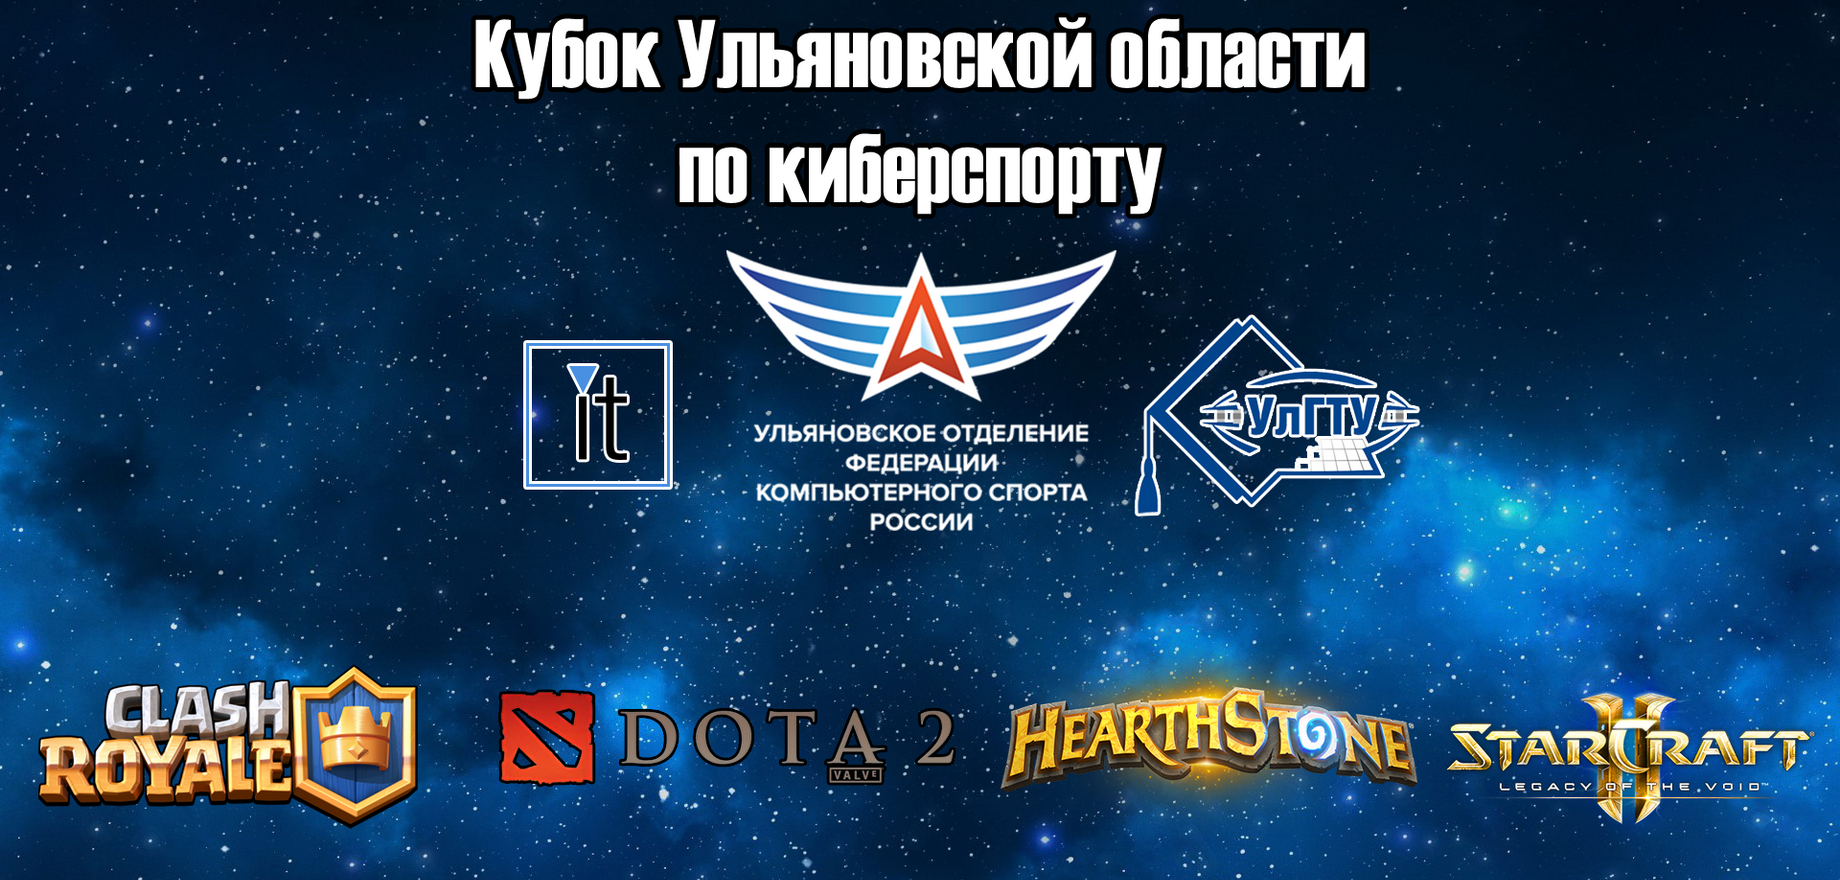 Кубок Ульяновской области по киберспорту 2018